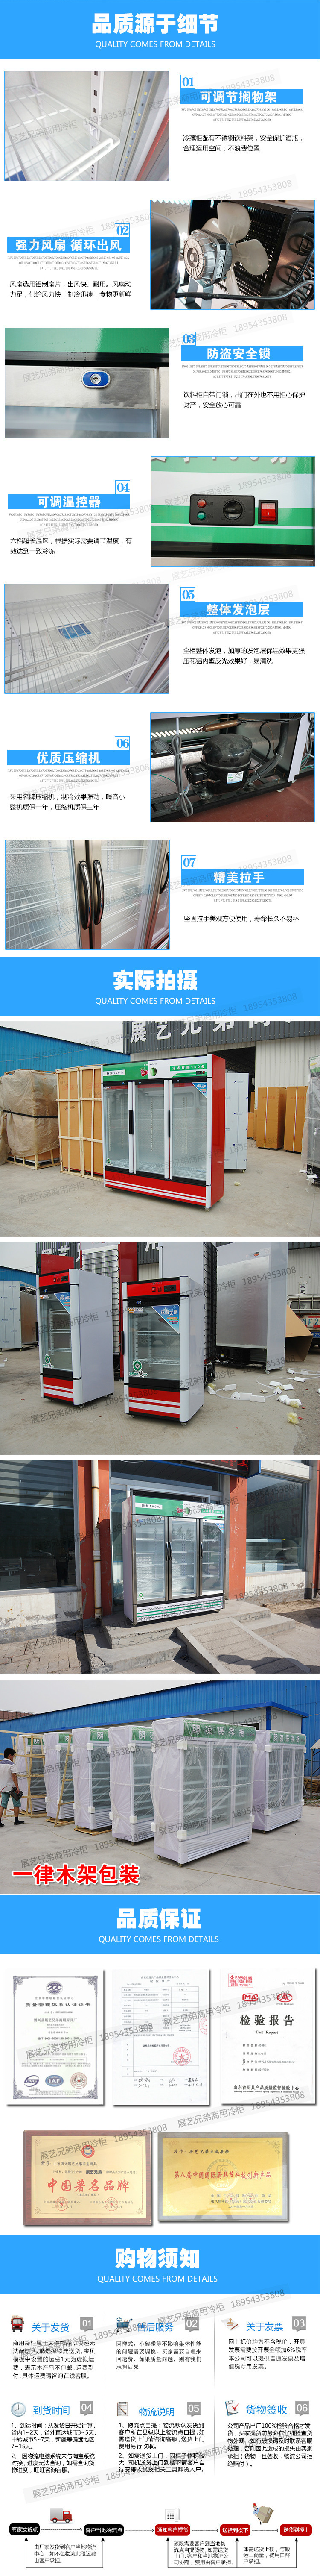 饮料柜 双门展示柜商用立式冷藏保鲜展示柜制冷强劲噪音小可定制